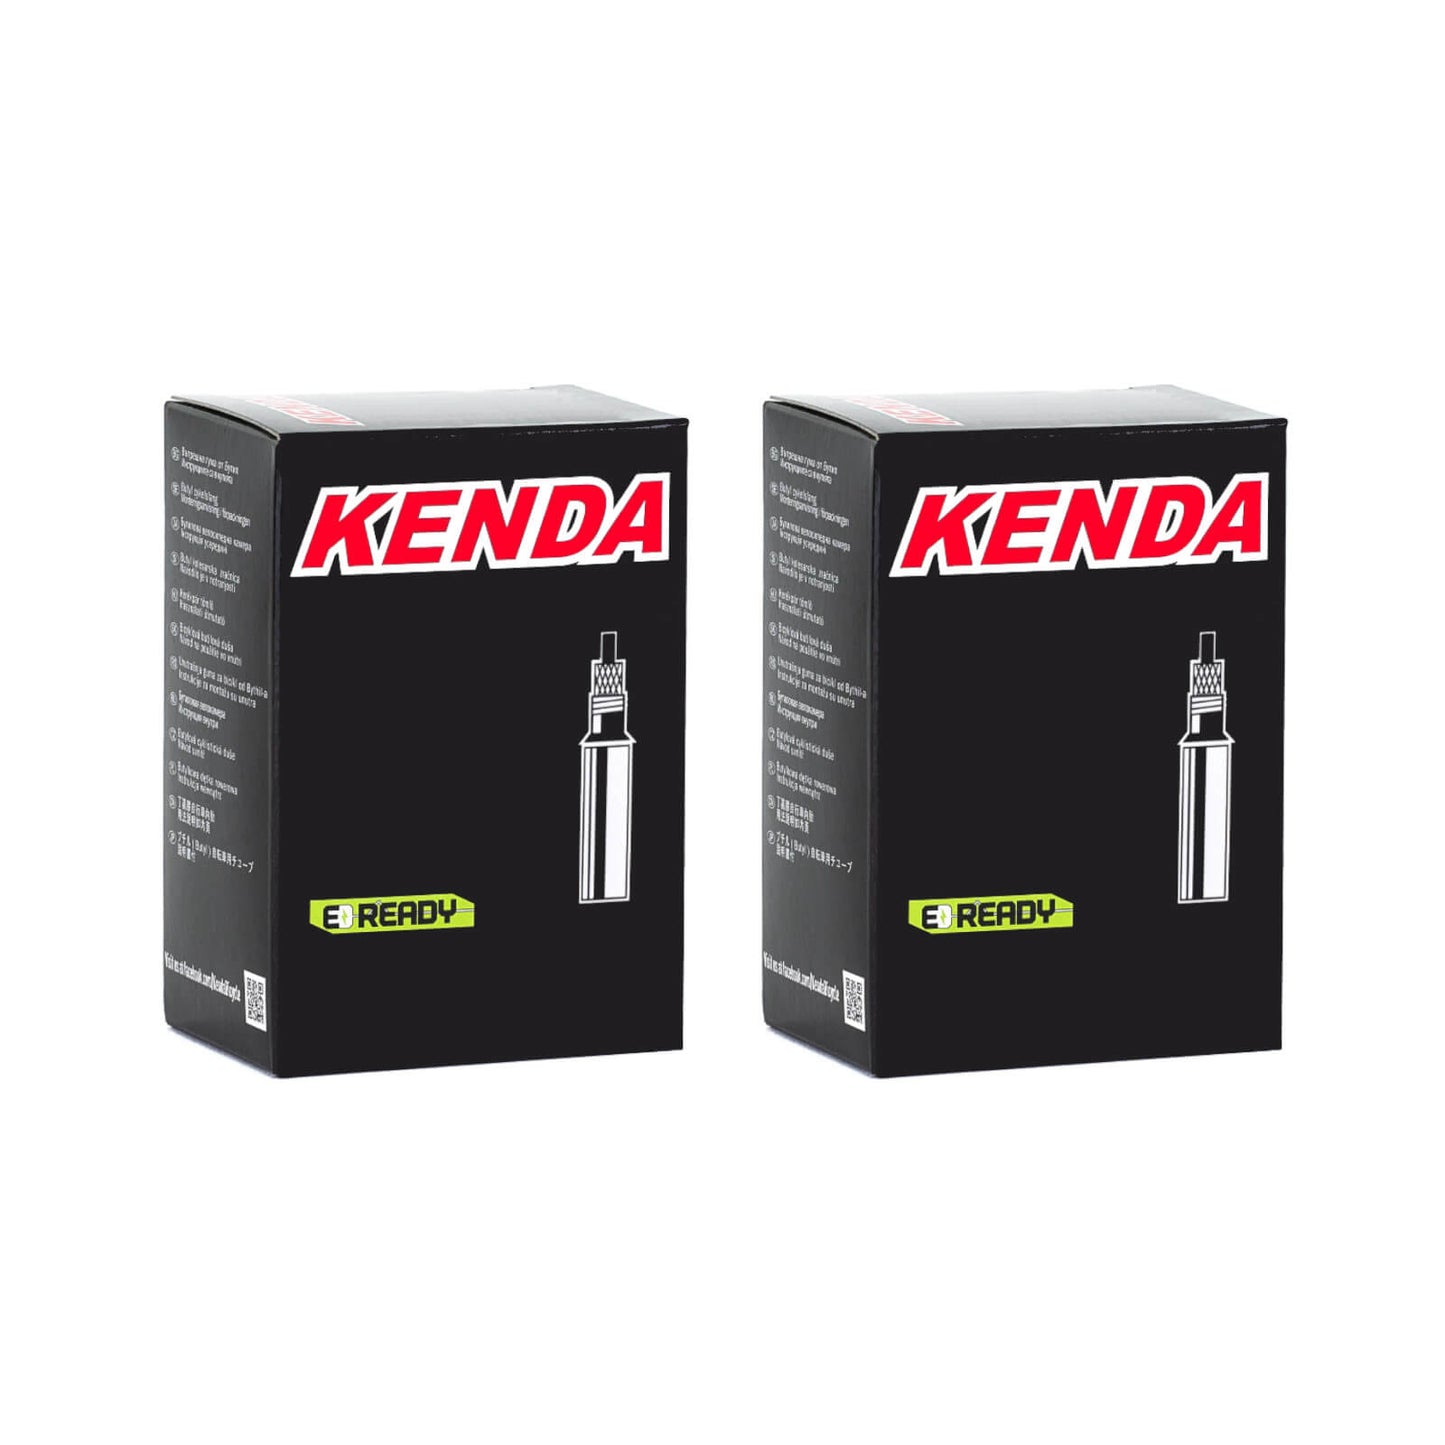 Kenda 700x28-35c 700c Presta Valve Bike Inner Tube Pack of 2